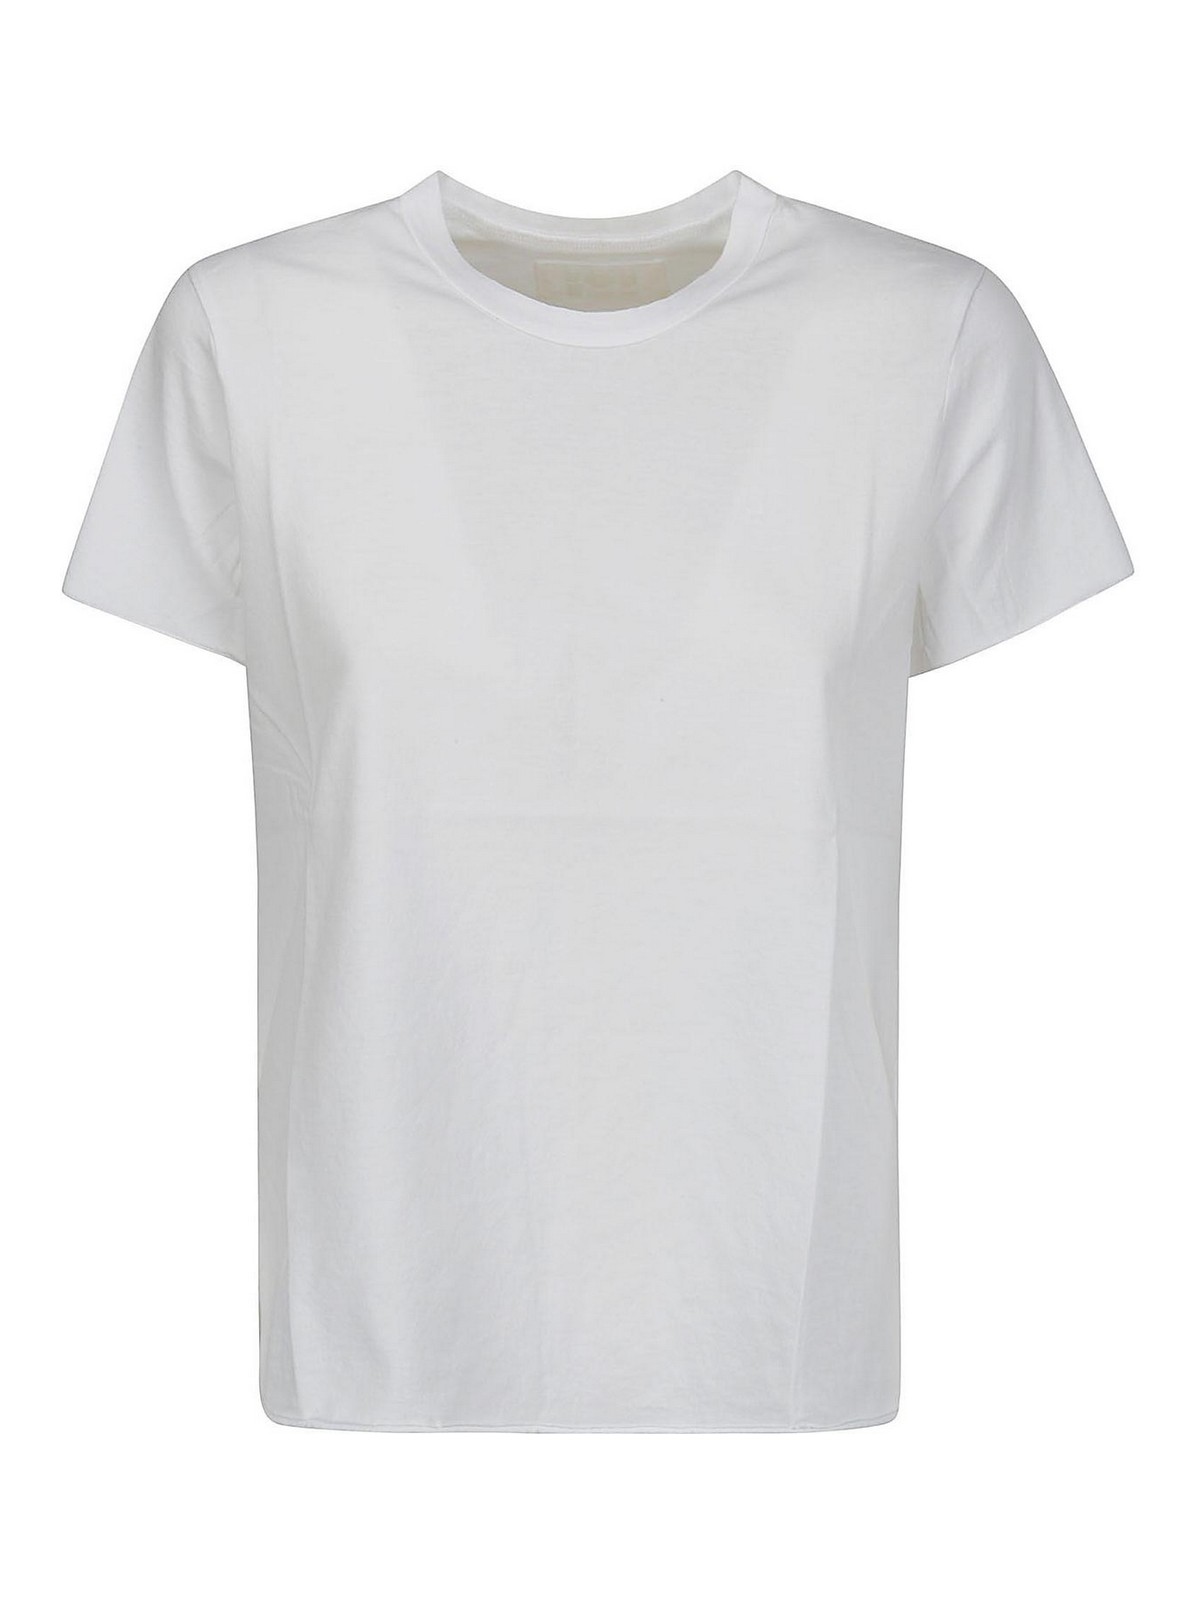 Shop Labo.art Camiseta - Blanco In White